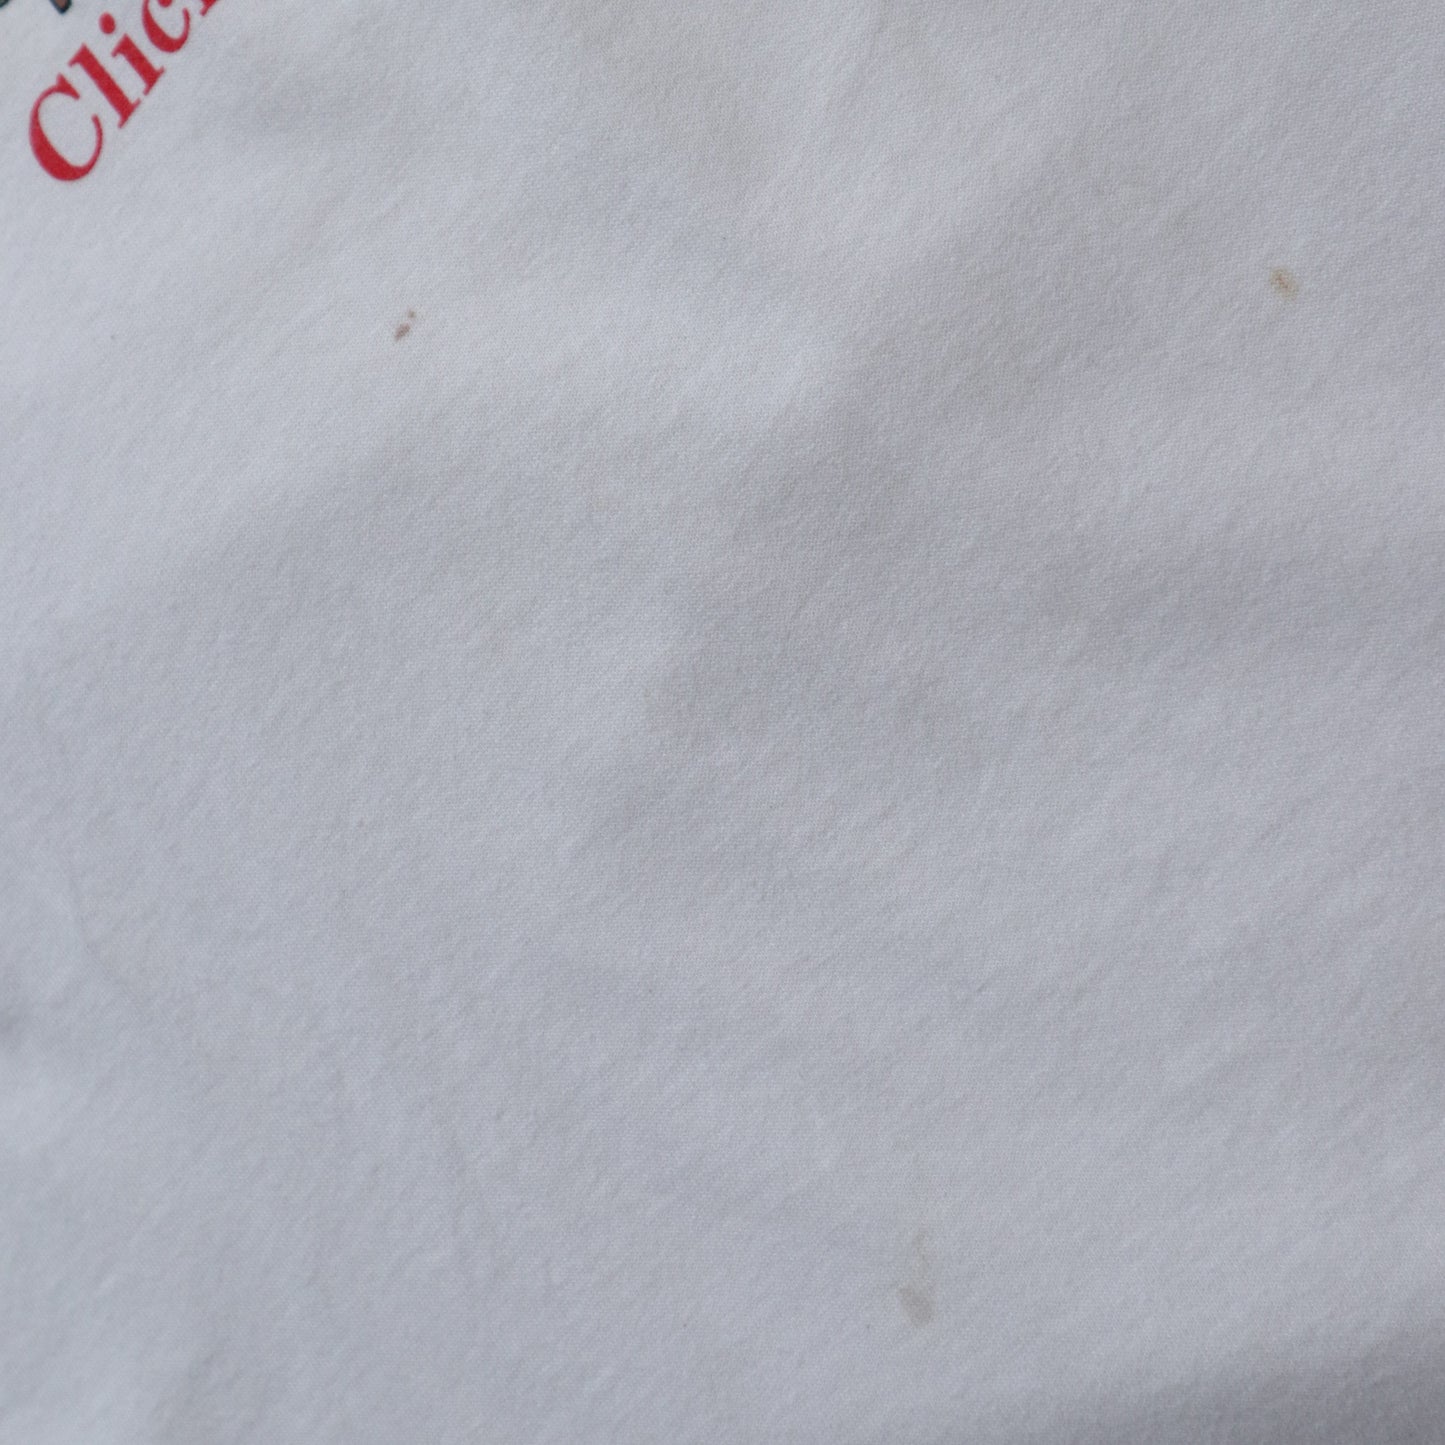 1991年 アメリカ製 ソファポテト オフセットプリントTシャツ